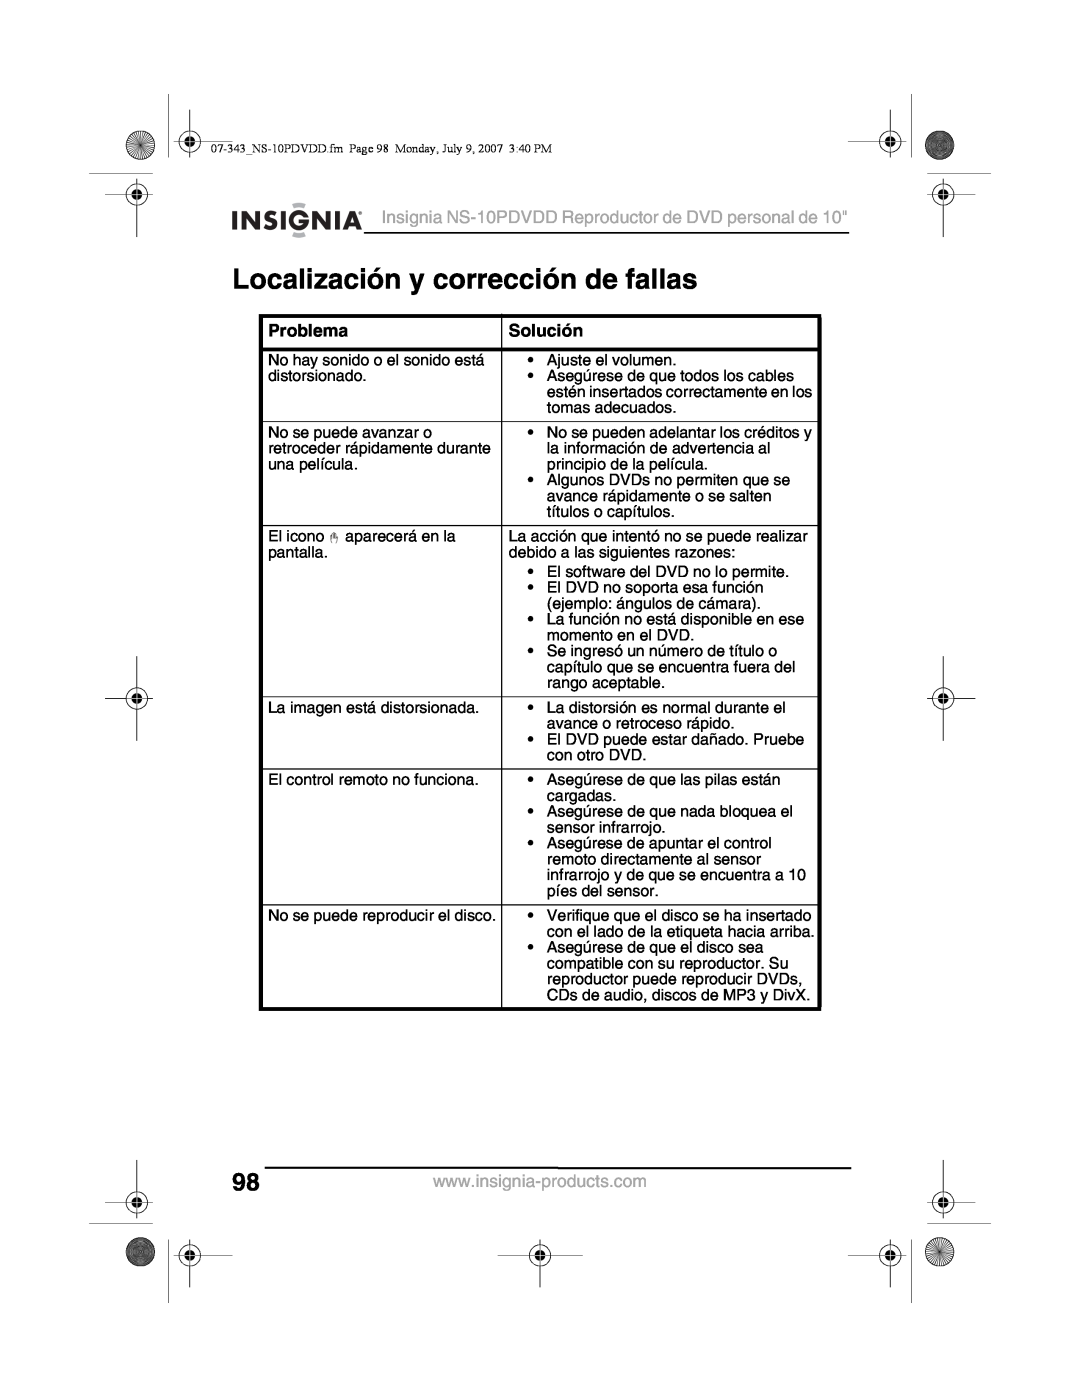 Insignia NS-10PDVDD manual Localización y corrección de fallas, Problema, Solución 